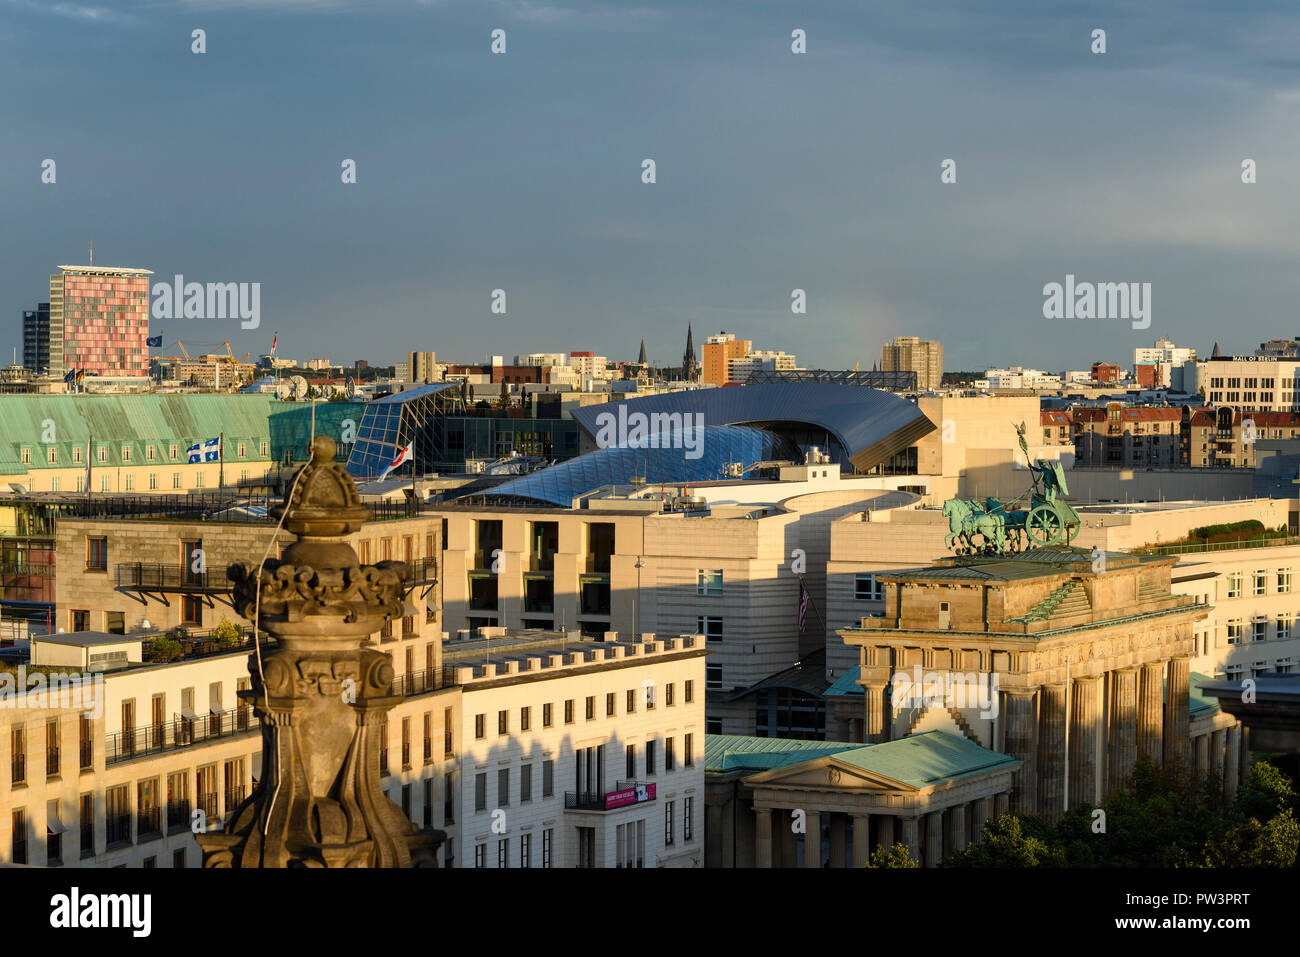 Berlino. Germania. Lo skyline di Berlino con la vista in elevazione della Porta di Brandeburgo (Brandenburger Tor) e gli edifici sulla Pariser Platz, il caratteristico vetro r Foto Stock